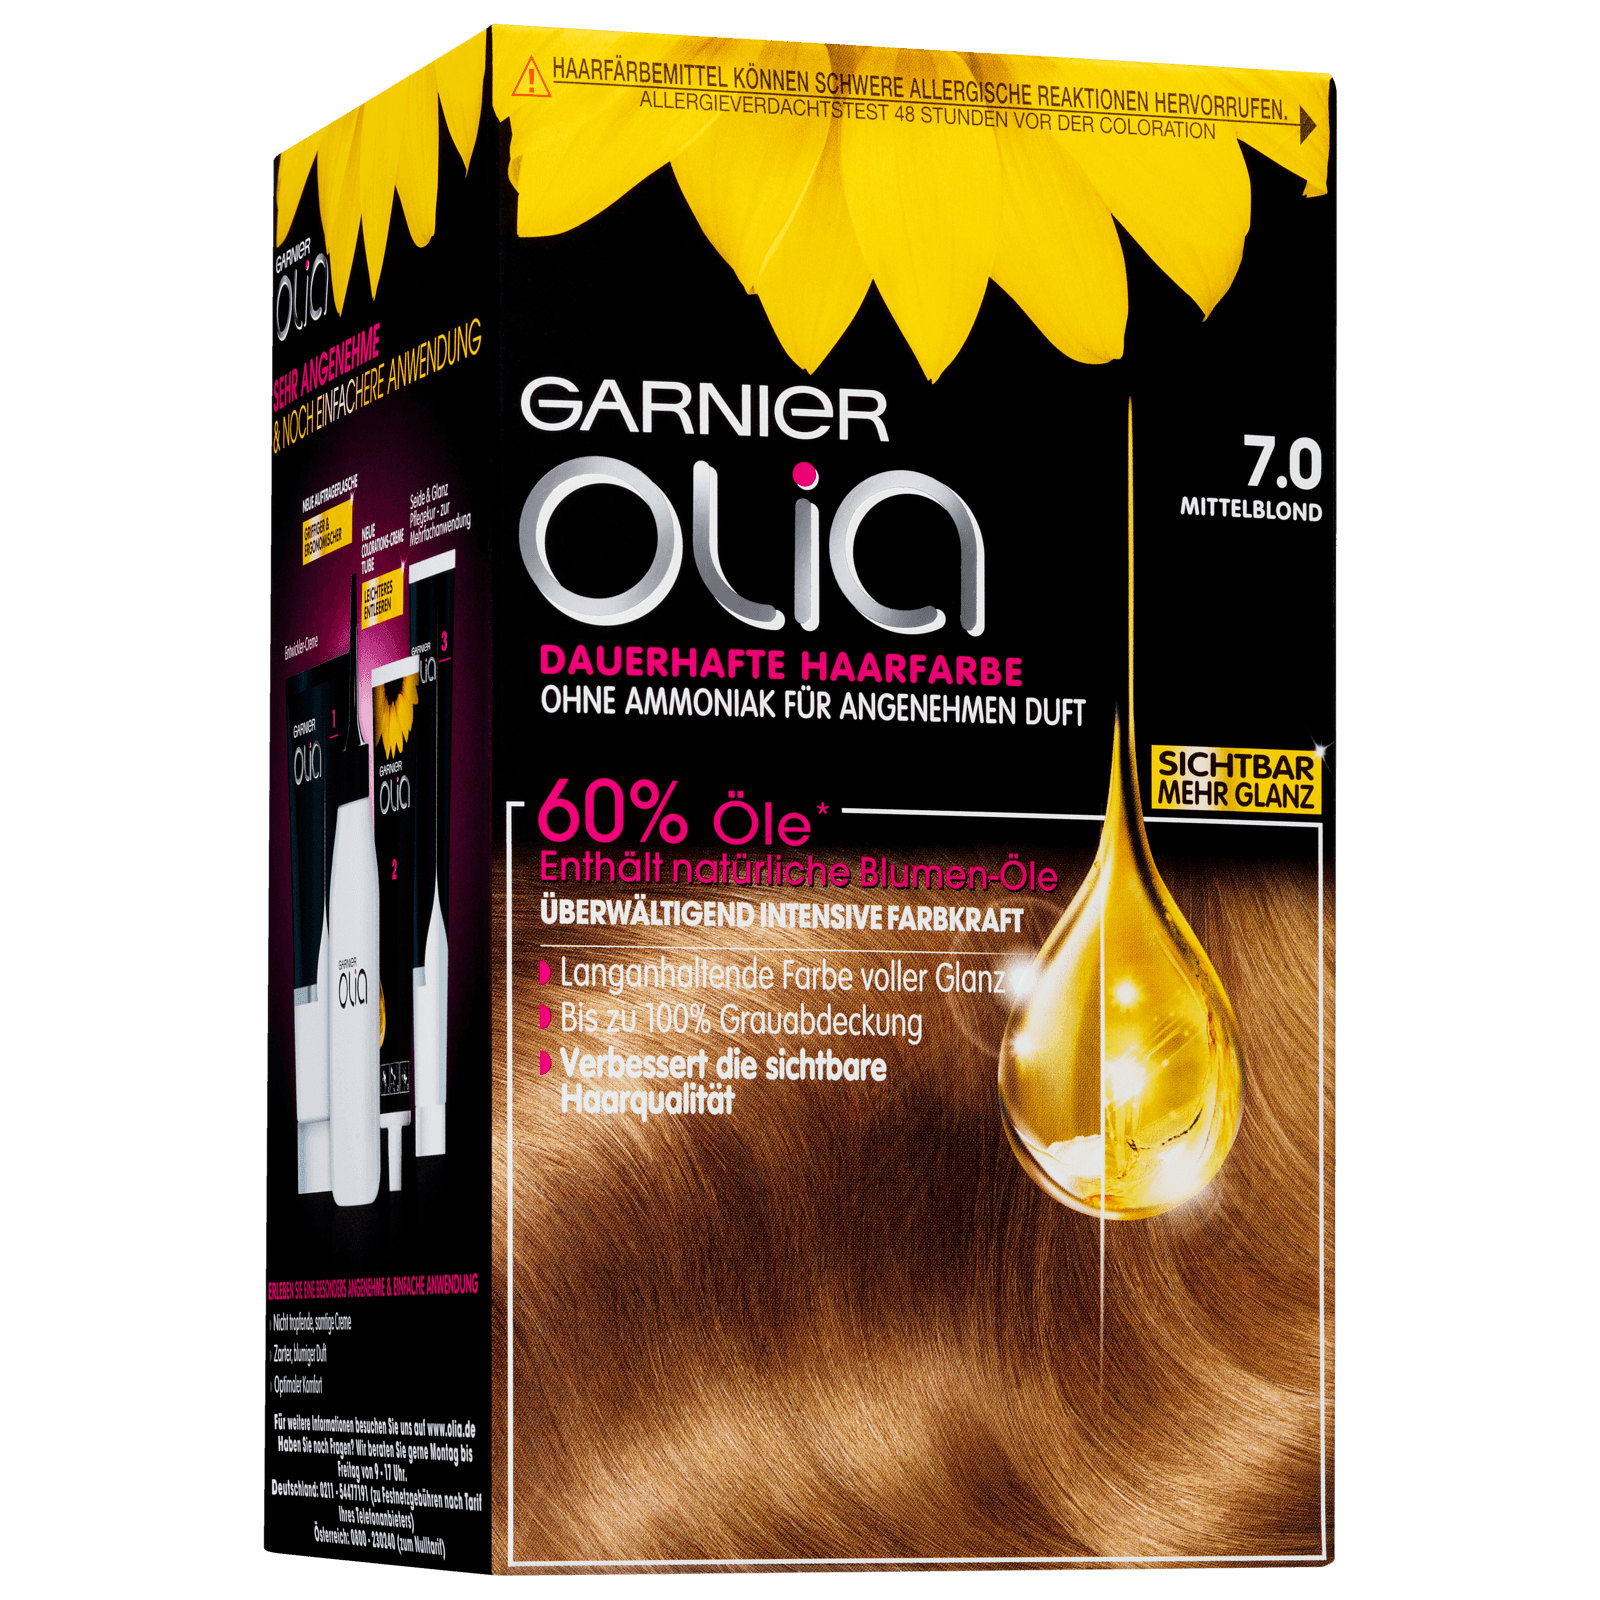 Garnier Olia Dauerhafte Haarfarbe 7.0 Mittelblond bei REWE online bestellen!